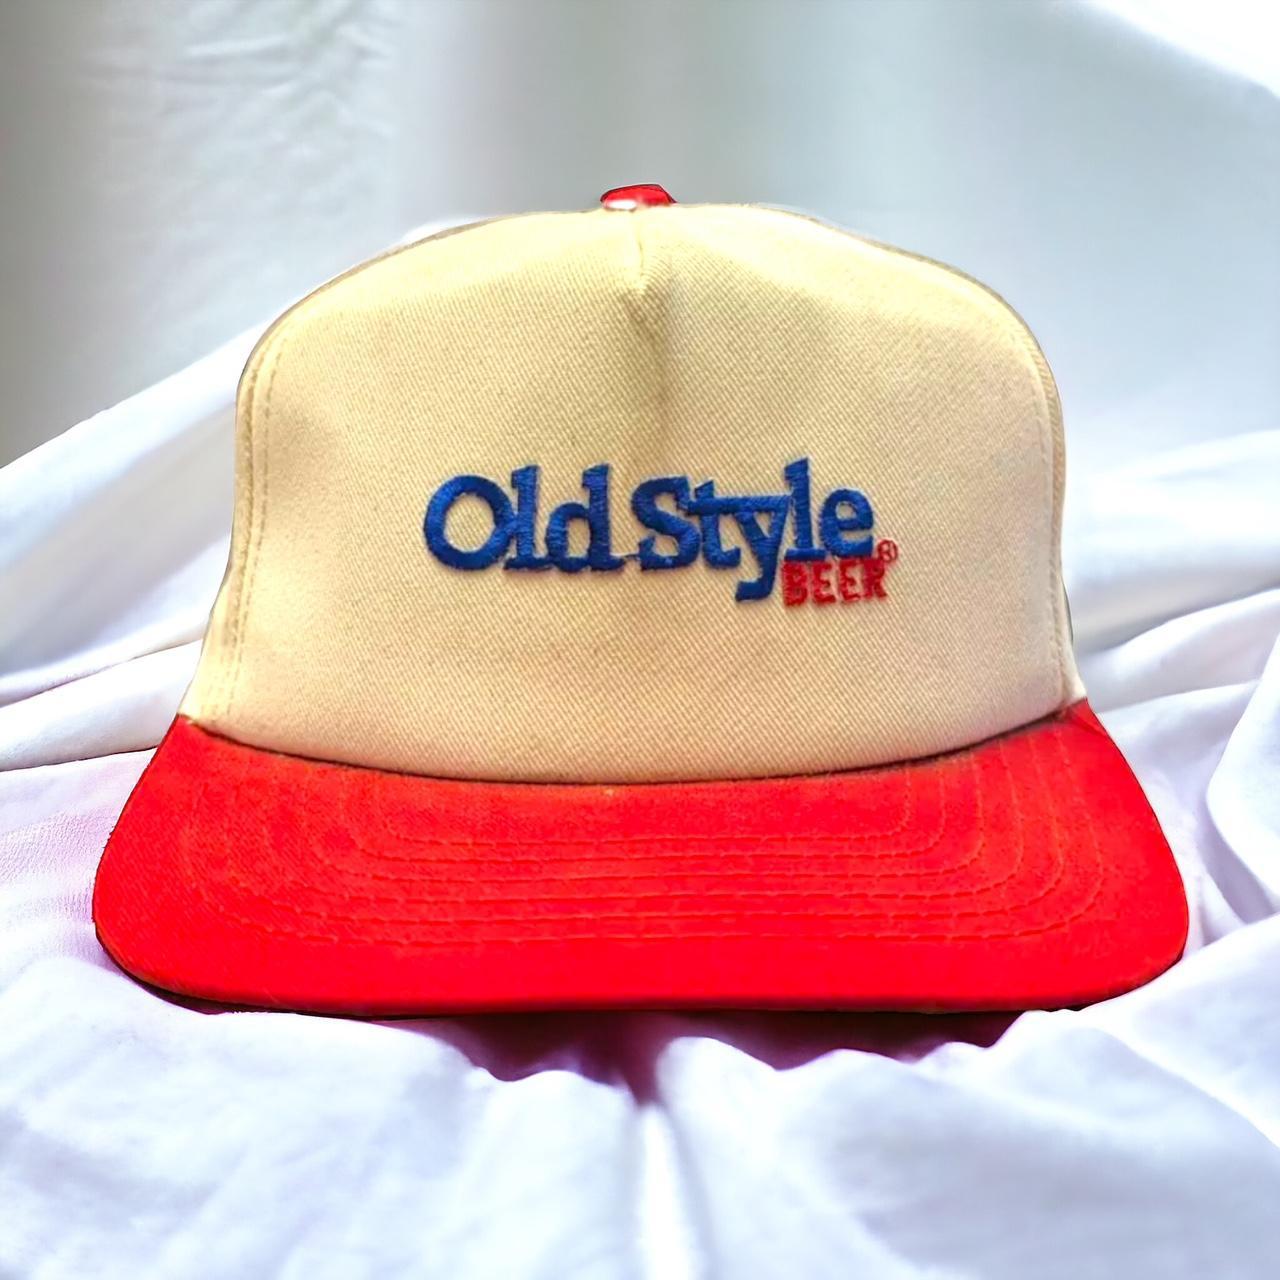 Vintage hats - Depop